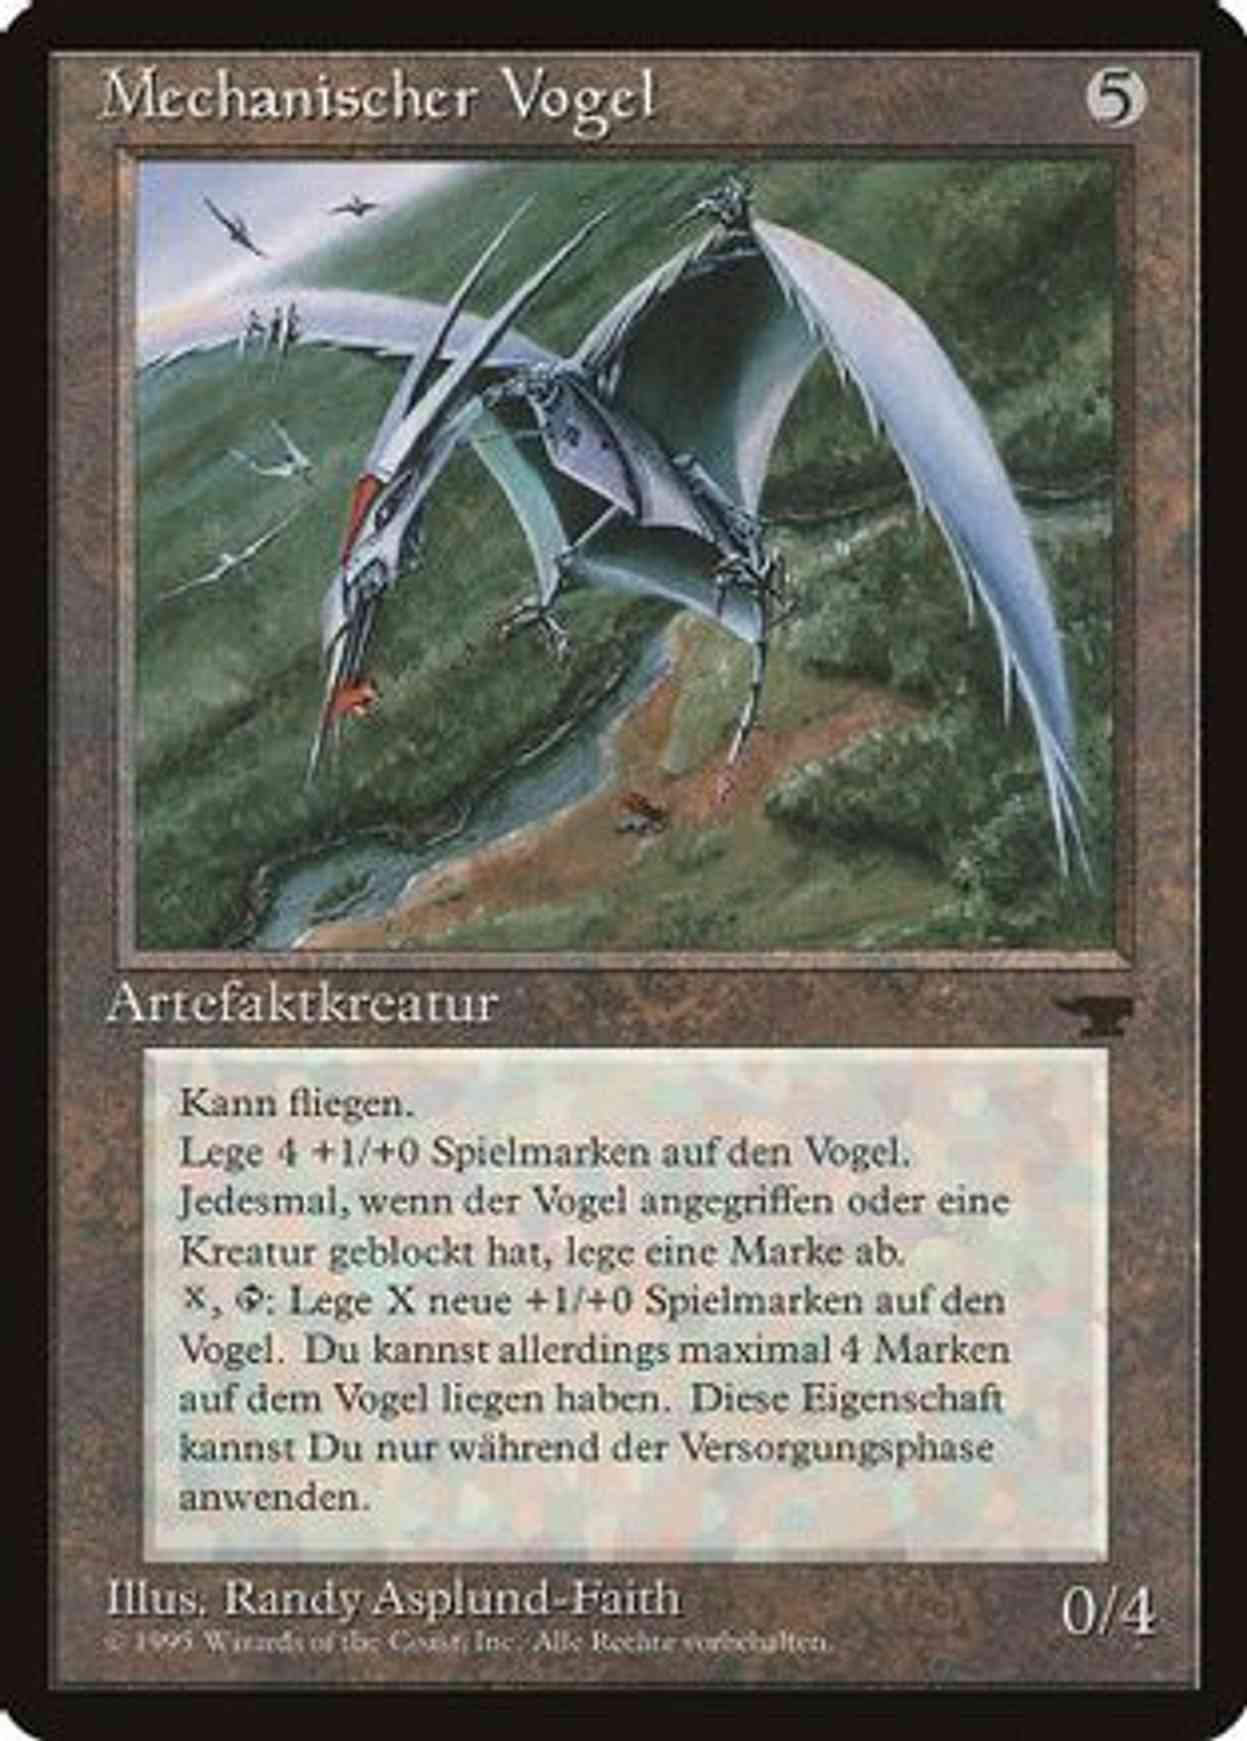 Clockwork Avian (German) - "Mechanischer Vogel" magic card front